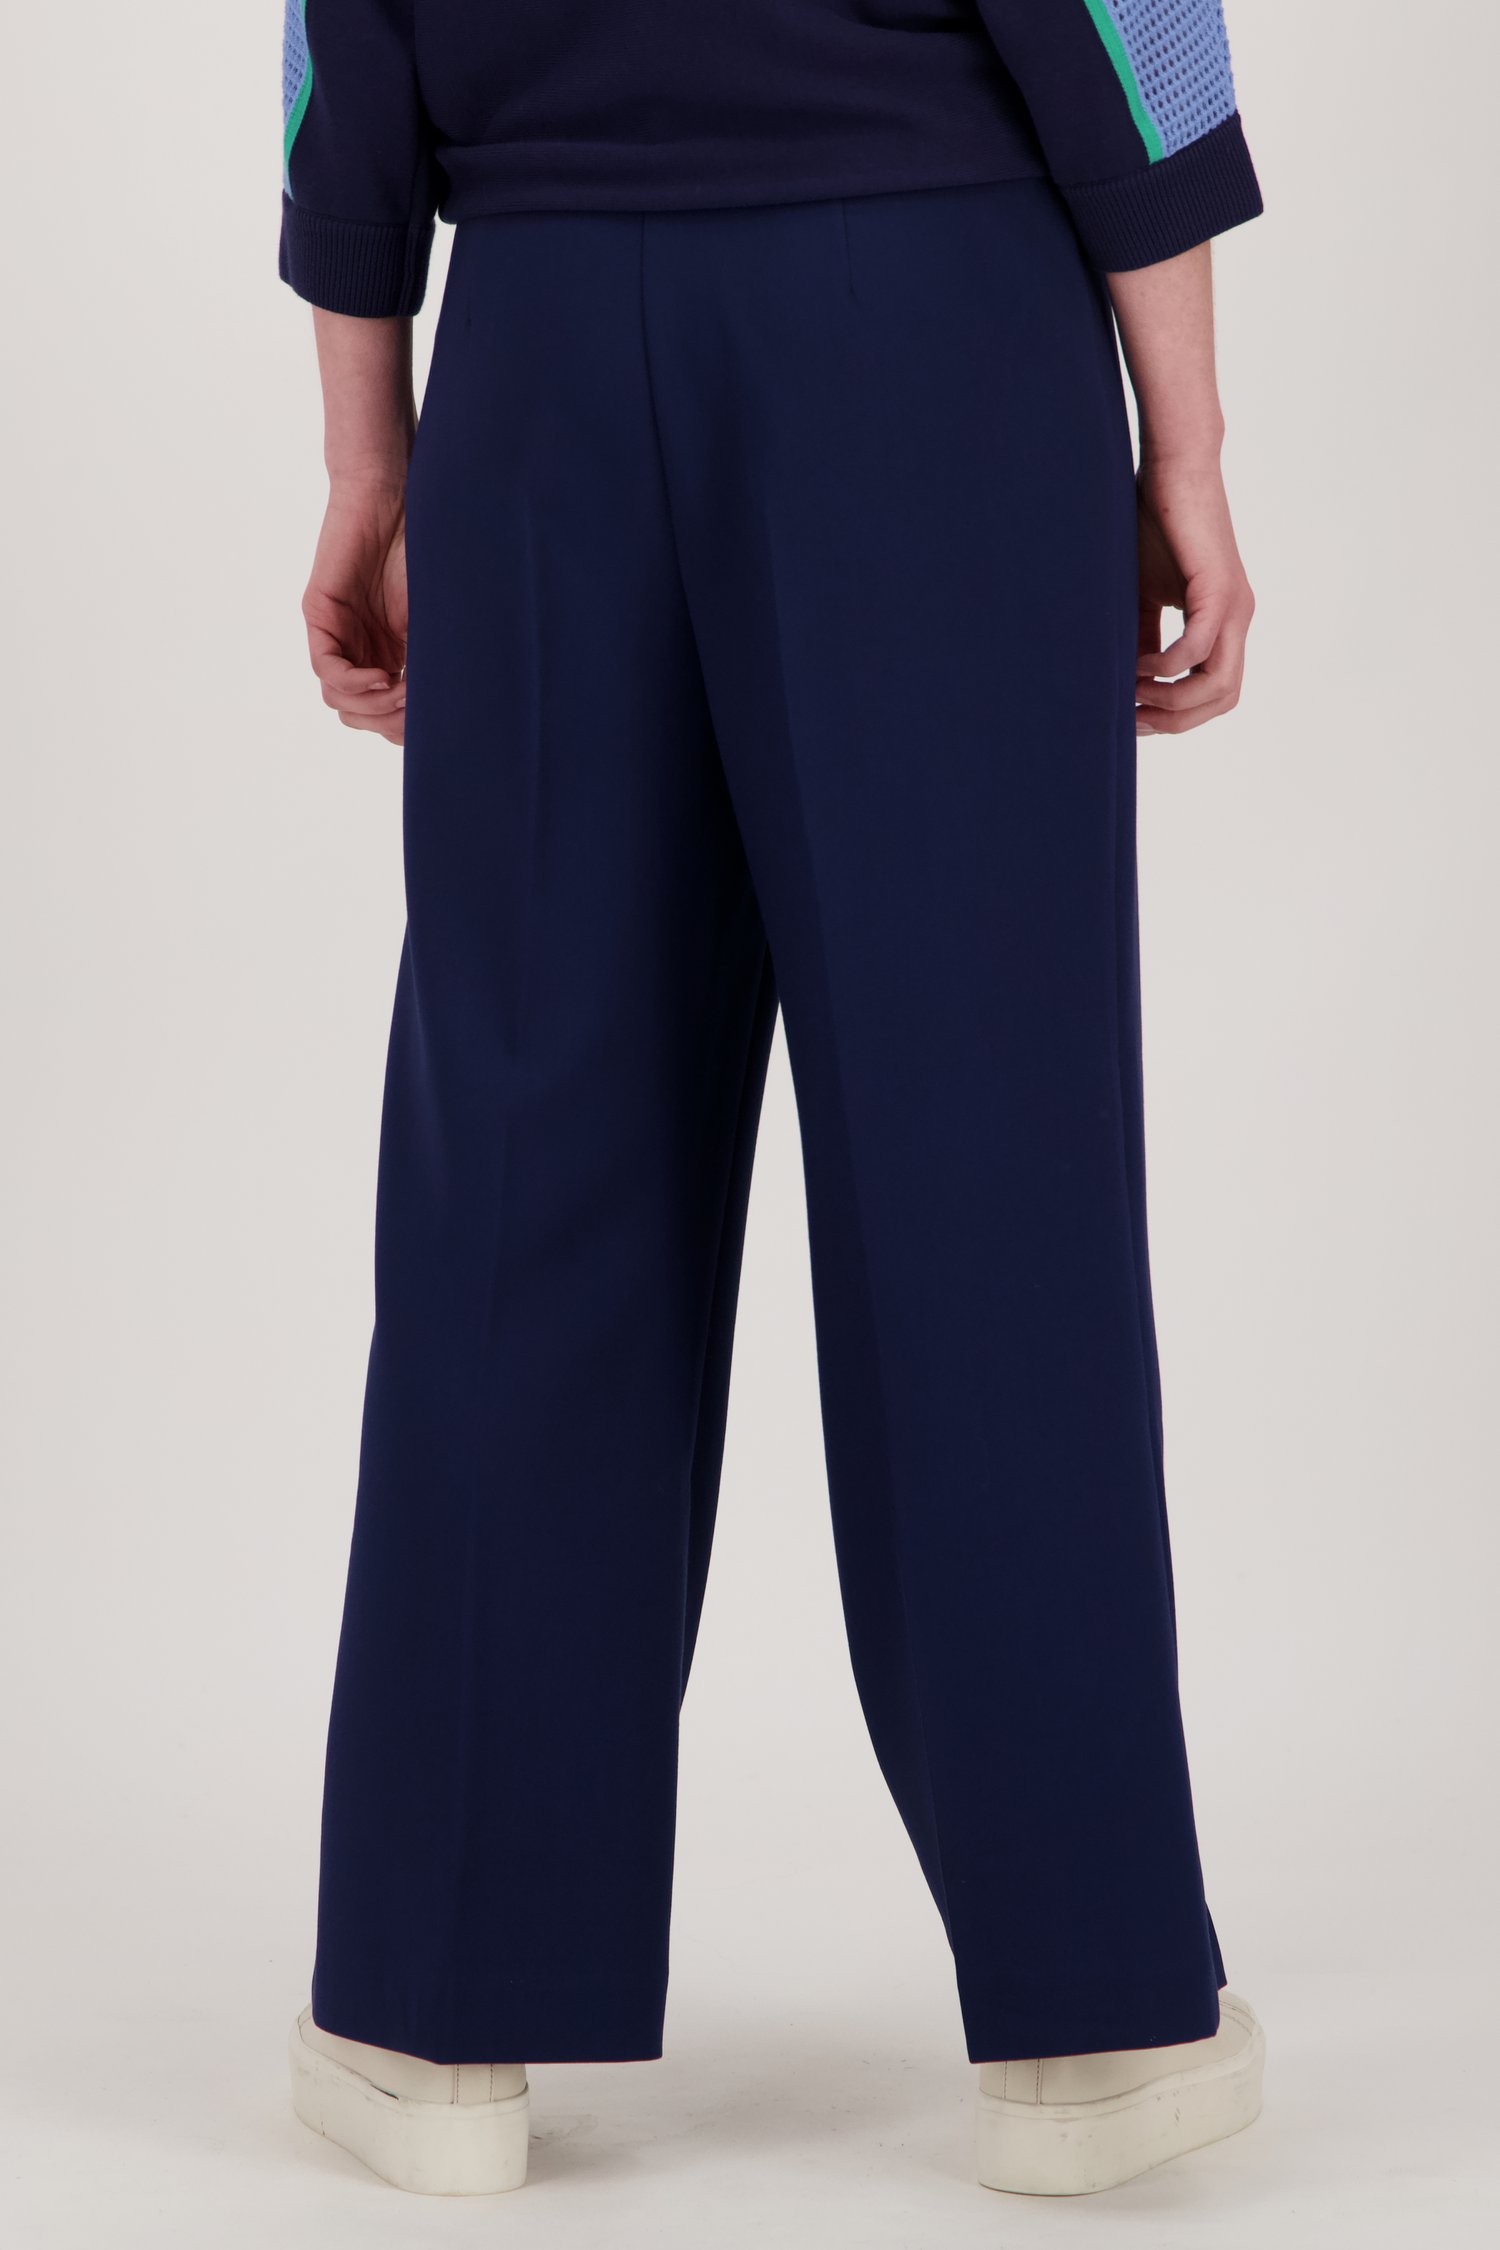 Pantalon large bleu foncé - longueur 7/8 de Libelle pour Femmes